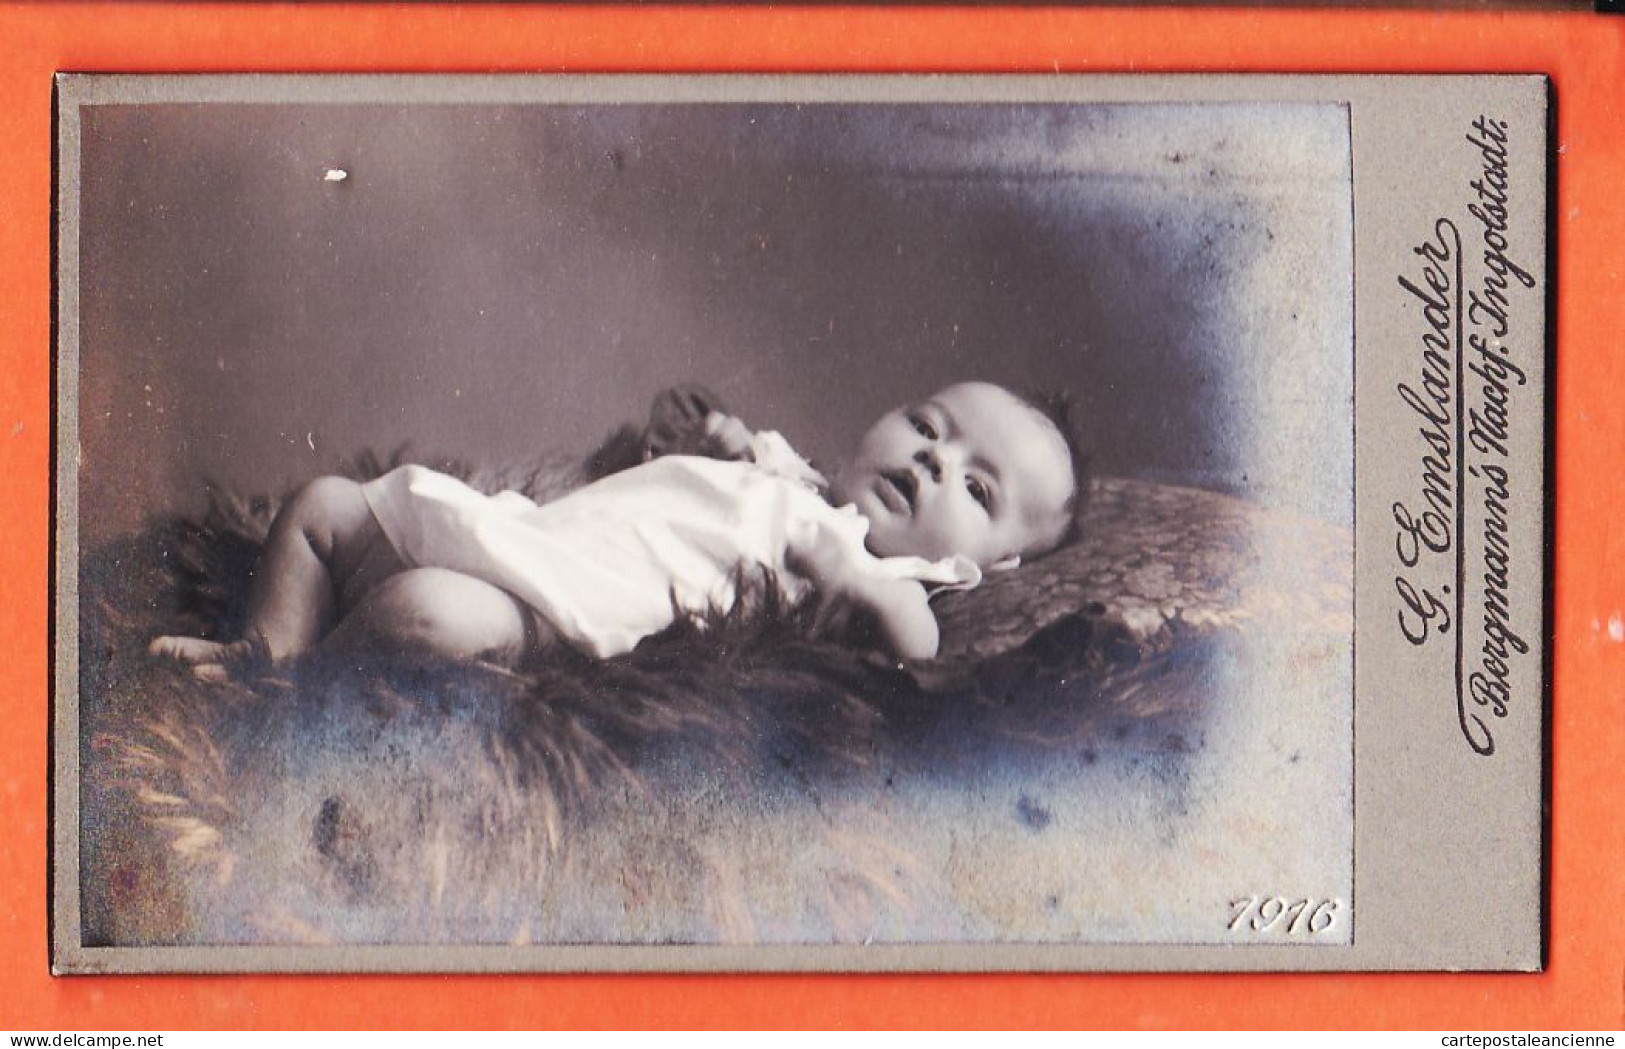 01119 / ⭐ Photo CDV INGOLSTADT Bayern ◉ Bébé Nacktes Baby Das Auf Einem Fell Liegt 1916 ◉ BERGMANN Nachf Georg EMSLANDER - Anonieme Personen